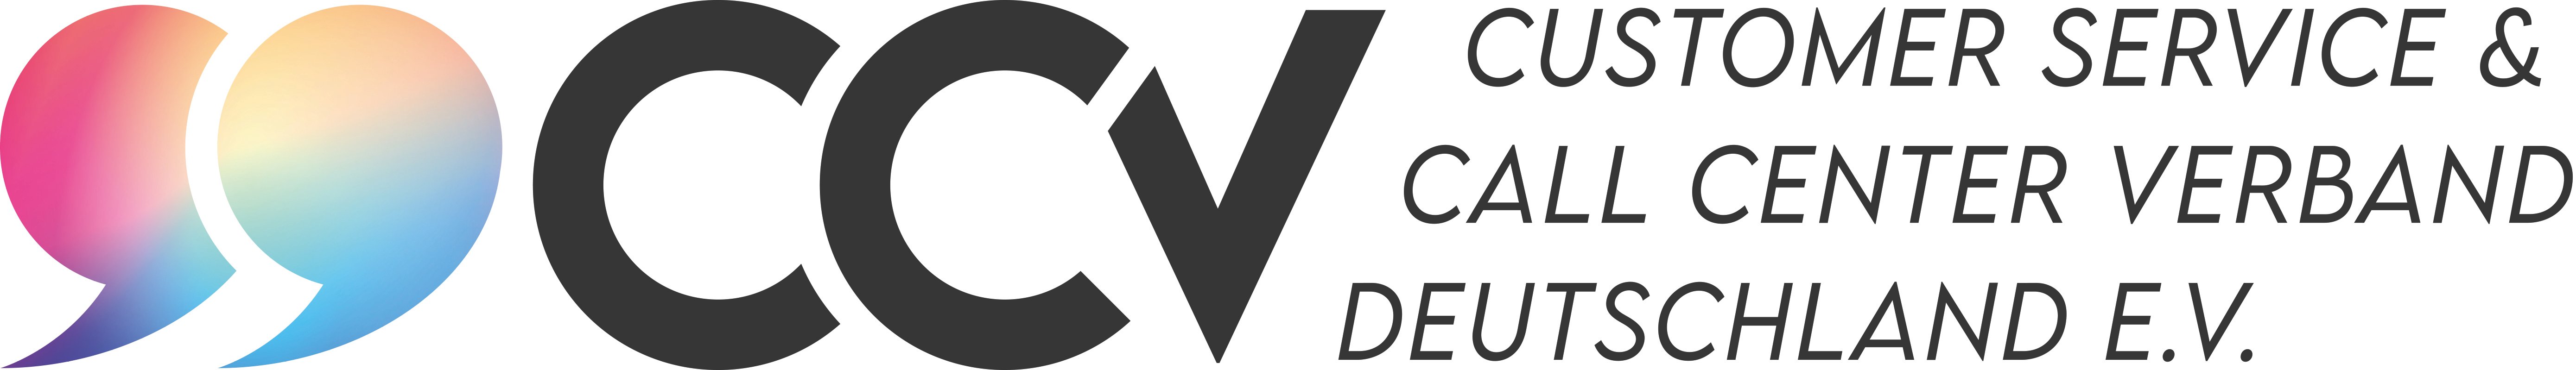 Logo_CCV-lang-eV_color_300dpi-cmyk